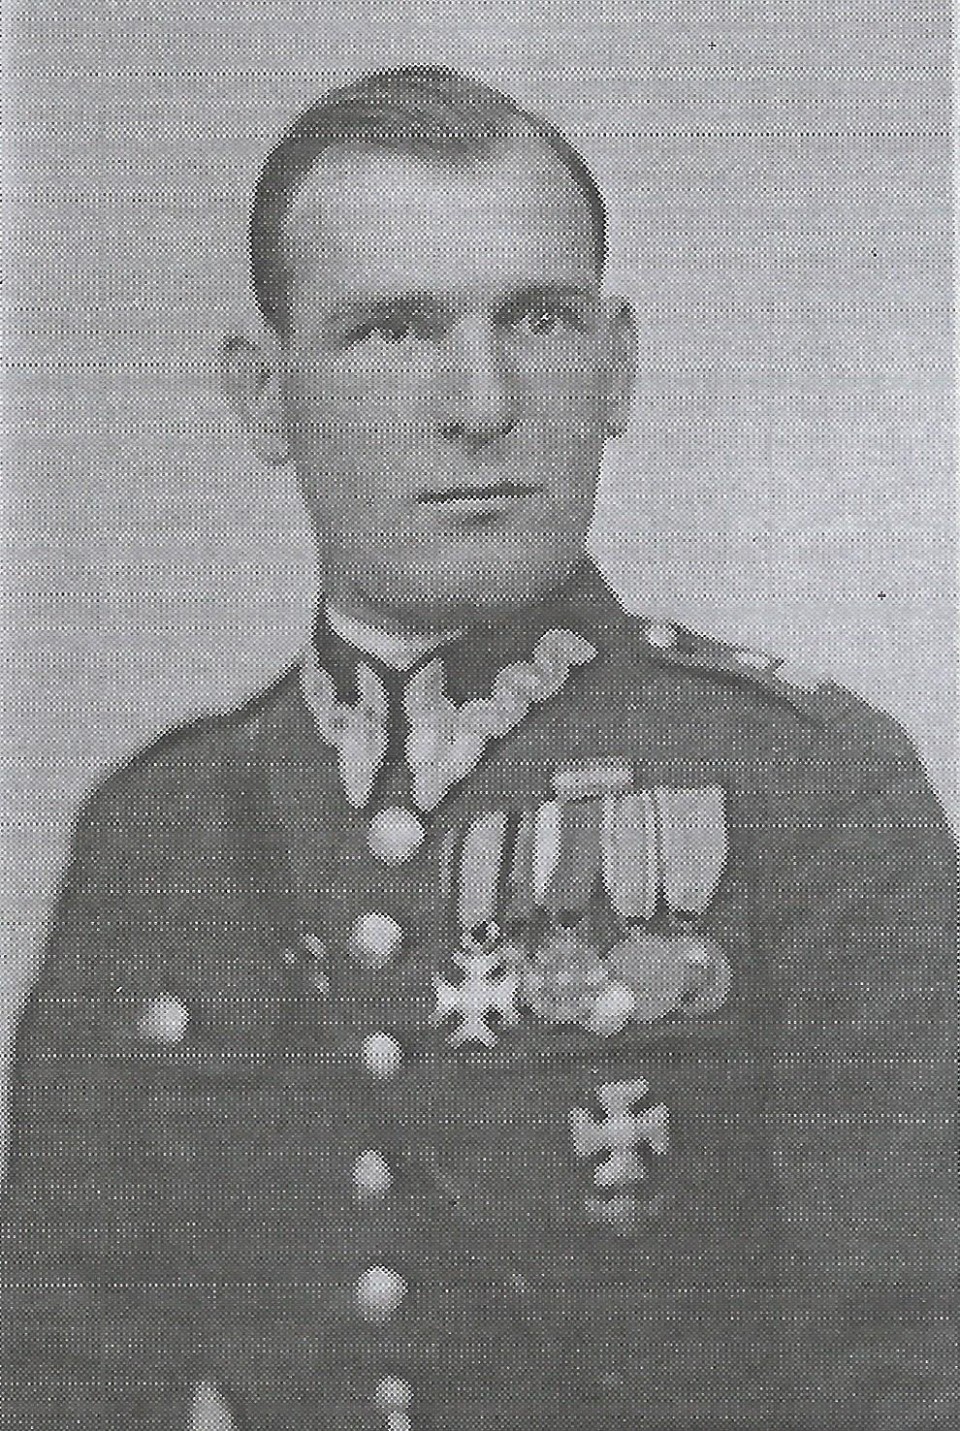 Tadeusz Wiewirkowski (1902-1955)